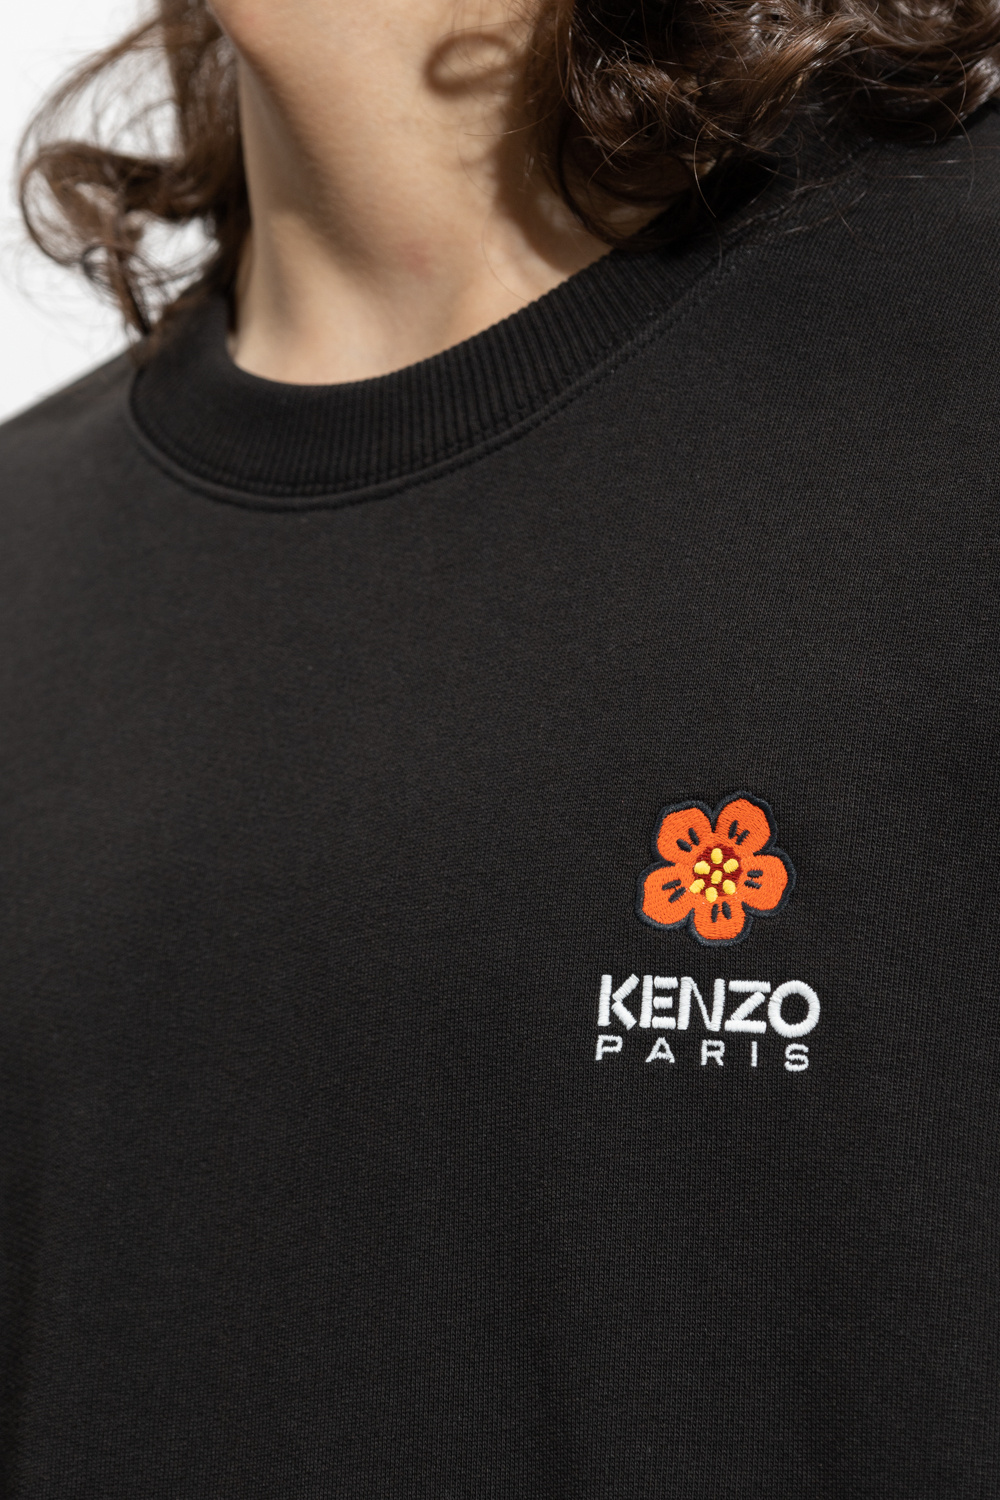 Kenzo Tee shirt manches longues en très bon état taille 9 mois